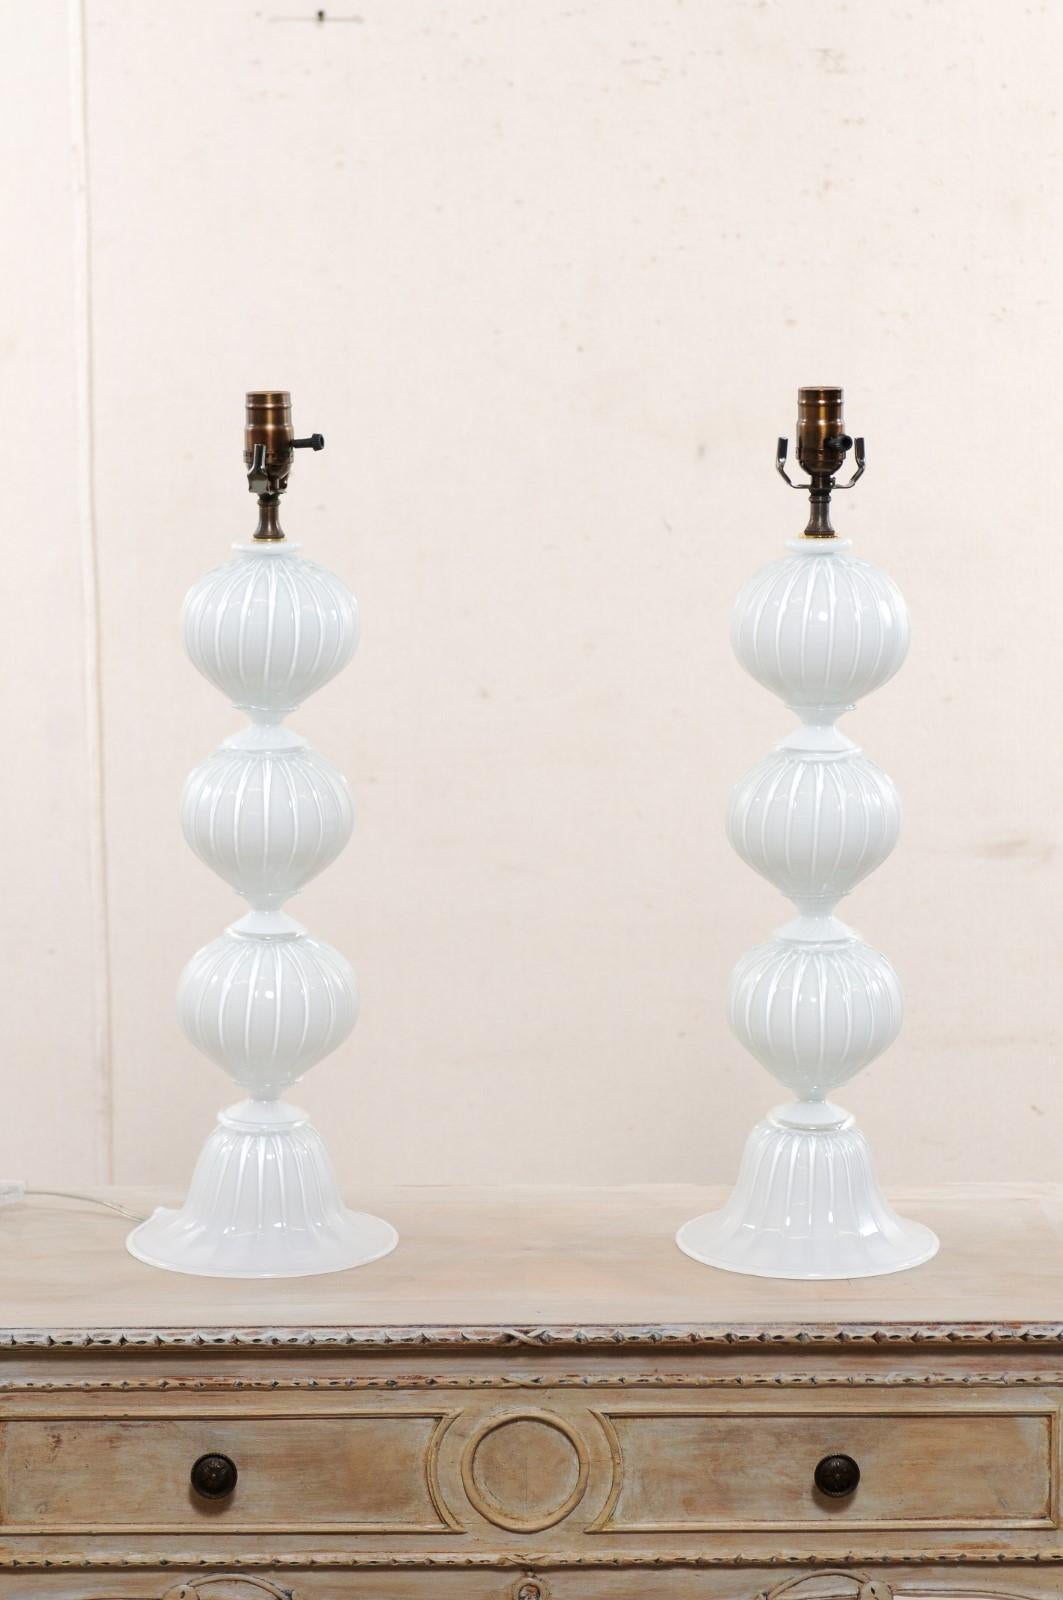 Ein italienisches Paar mundgeblasener Muranoglas-Tischlampen Diese klassisch gestalteten italienischen Tischlampen wurden von erfahrenen Glasmeistern auf der venezianischen Insel Murano, Italien, hergestellt. Jede Lampe verfügt über eine wunderschön